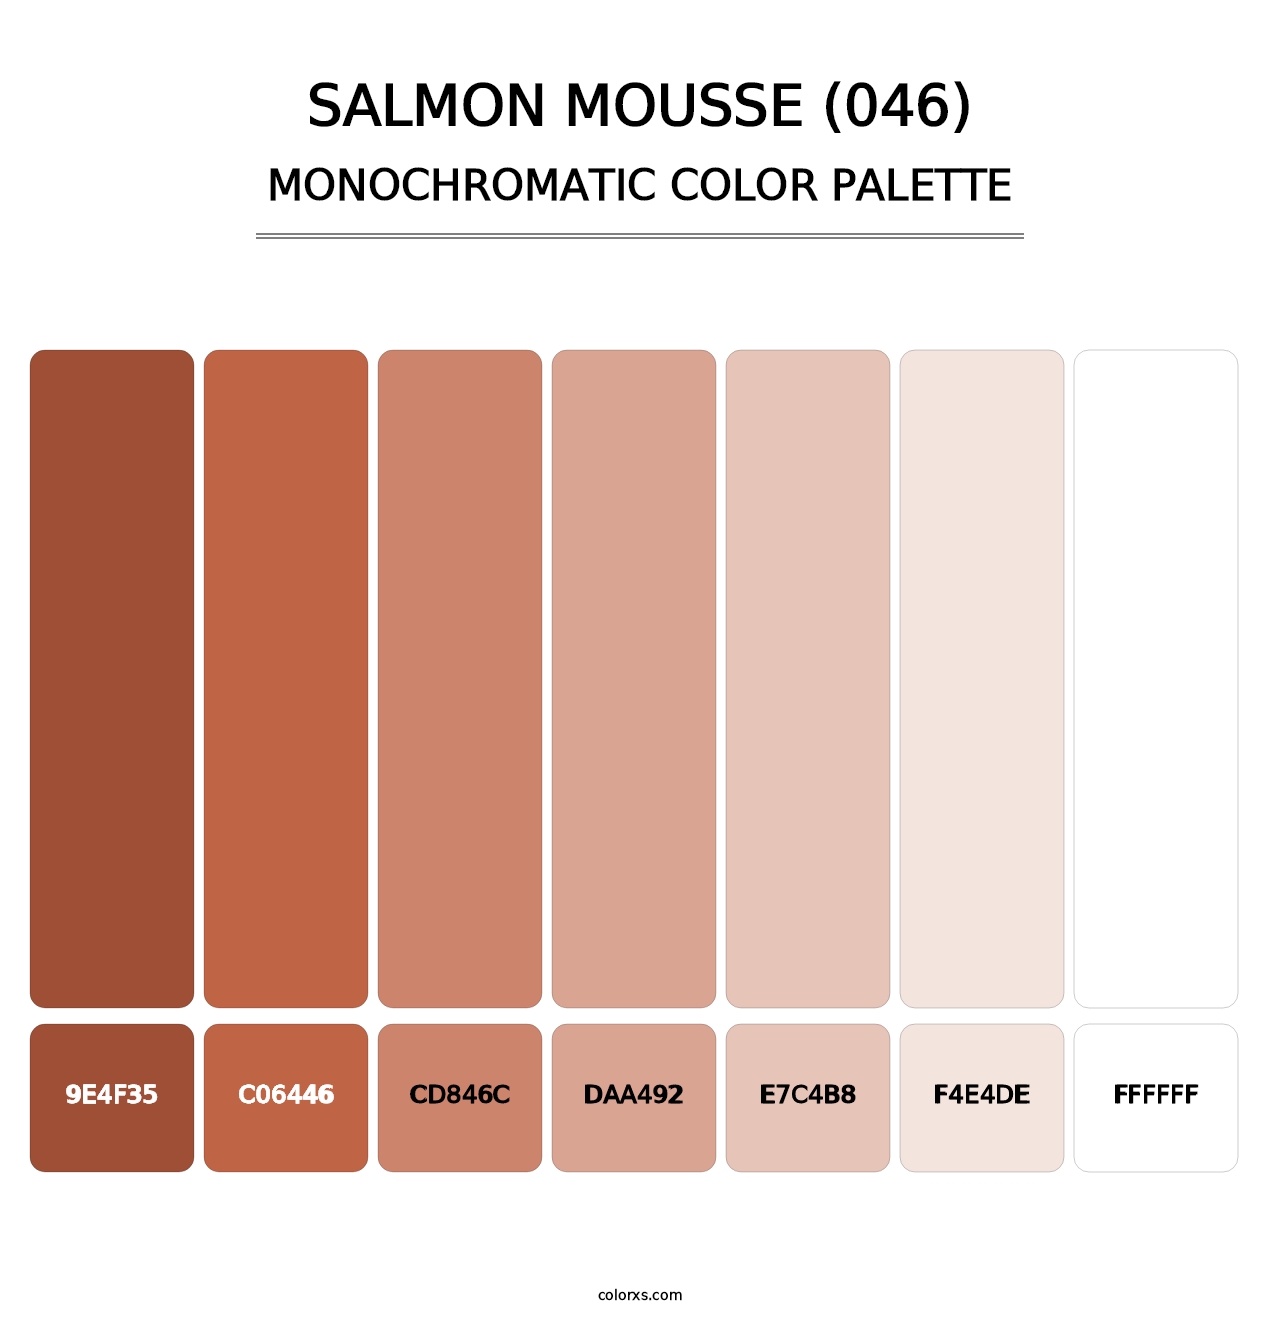 Salmon Mousse (046) - Monochromatic Color Palette